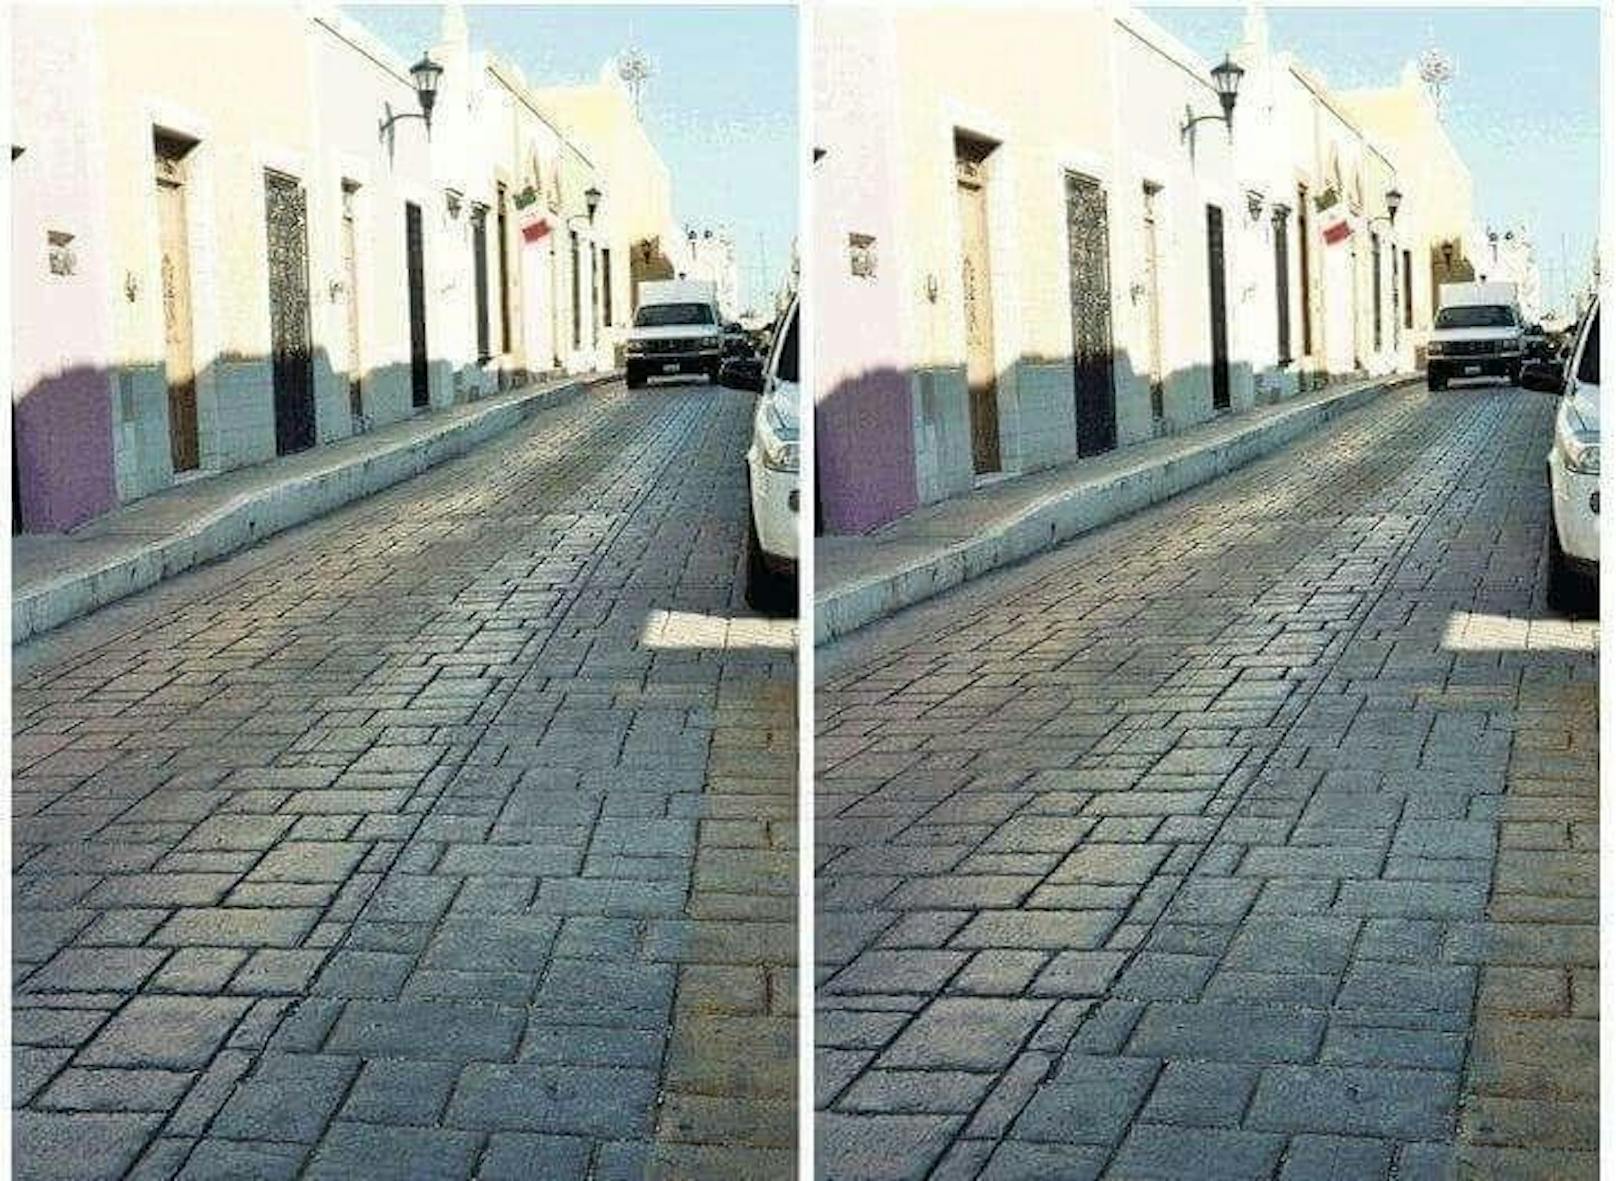 Jetzt mal ehrlich: Diese beiden Fotos sind doch ganz klar aus einem unterschiedlichen Winkel aufgenommen, oder? Falsch. Es ist nicht nur ein und dieselbe Straße, sondern auch ...